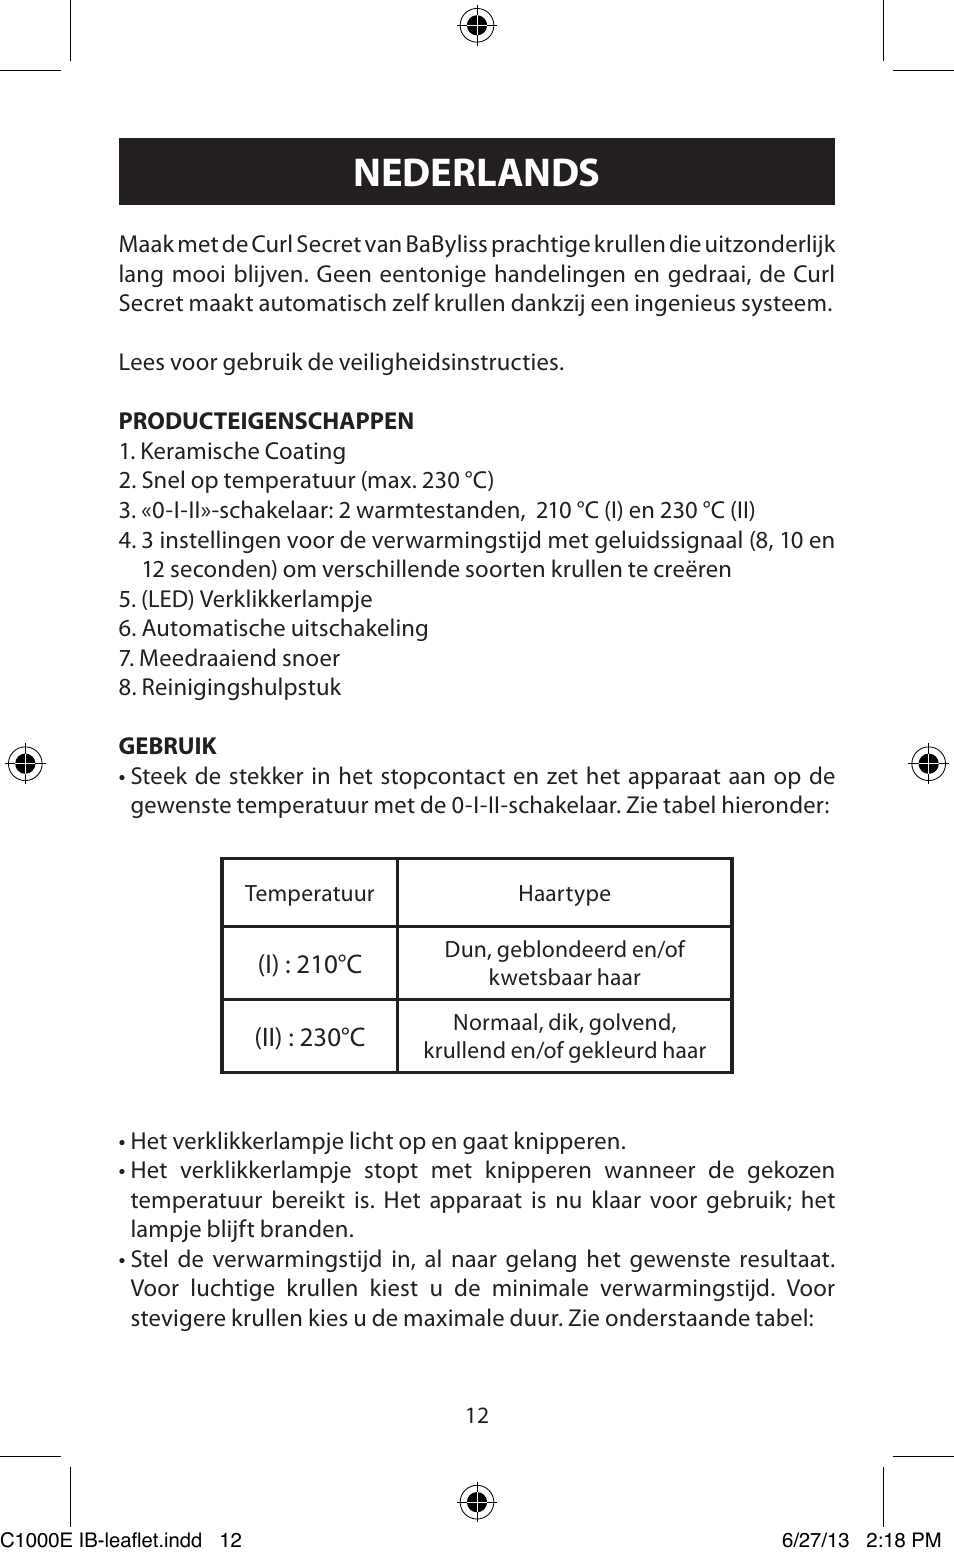 Nederlands | Babyliss C1000E Curl Secret User Manual | Page 12 / 56 |  Original mode